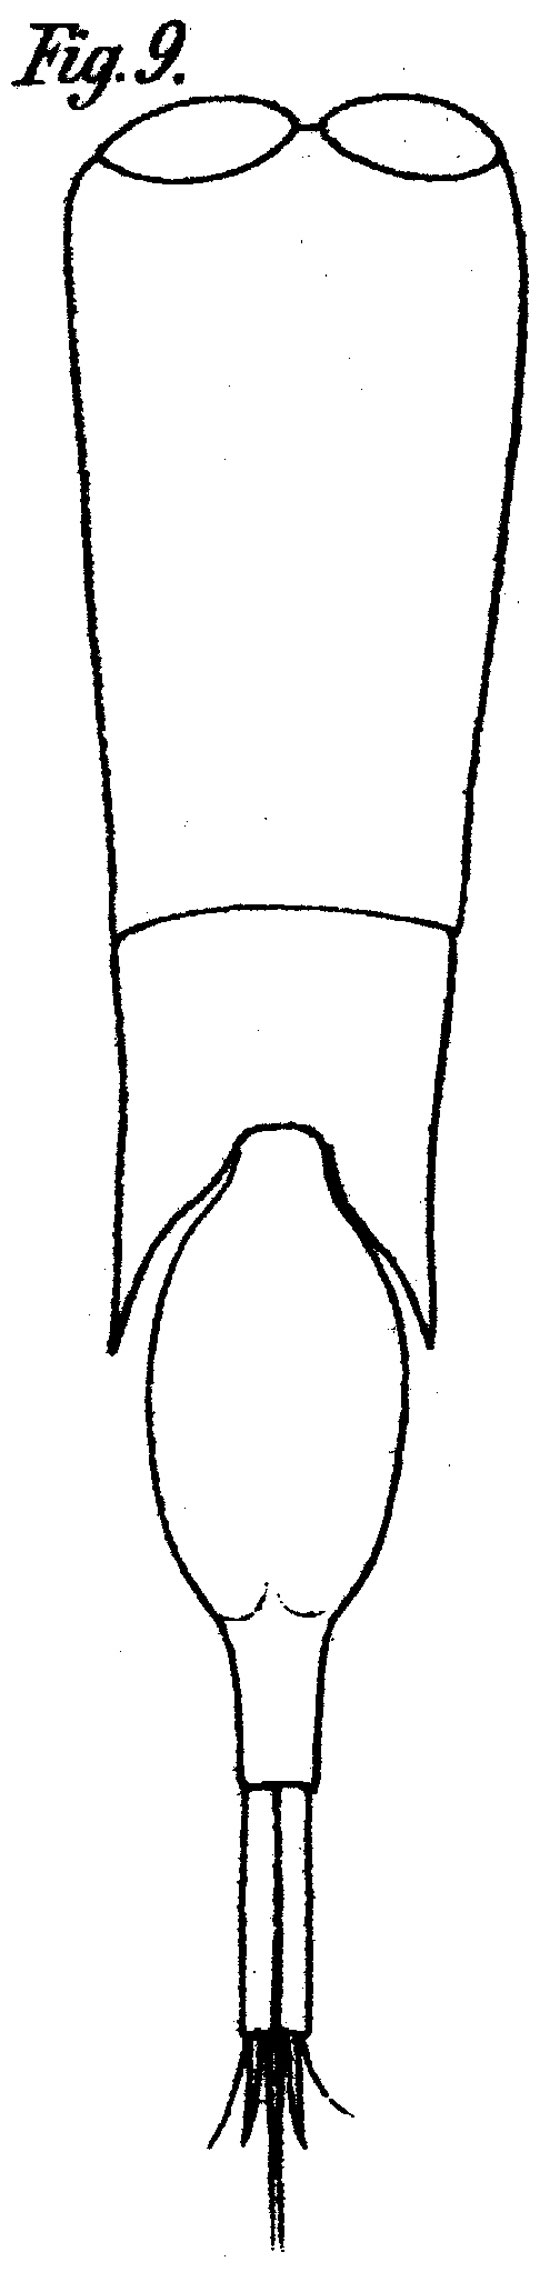 Espèce Farranula gibbula - Planche 5 de figures morphologiques